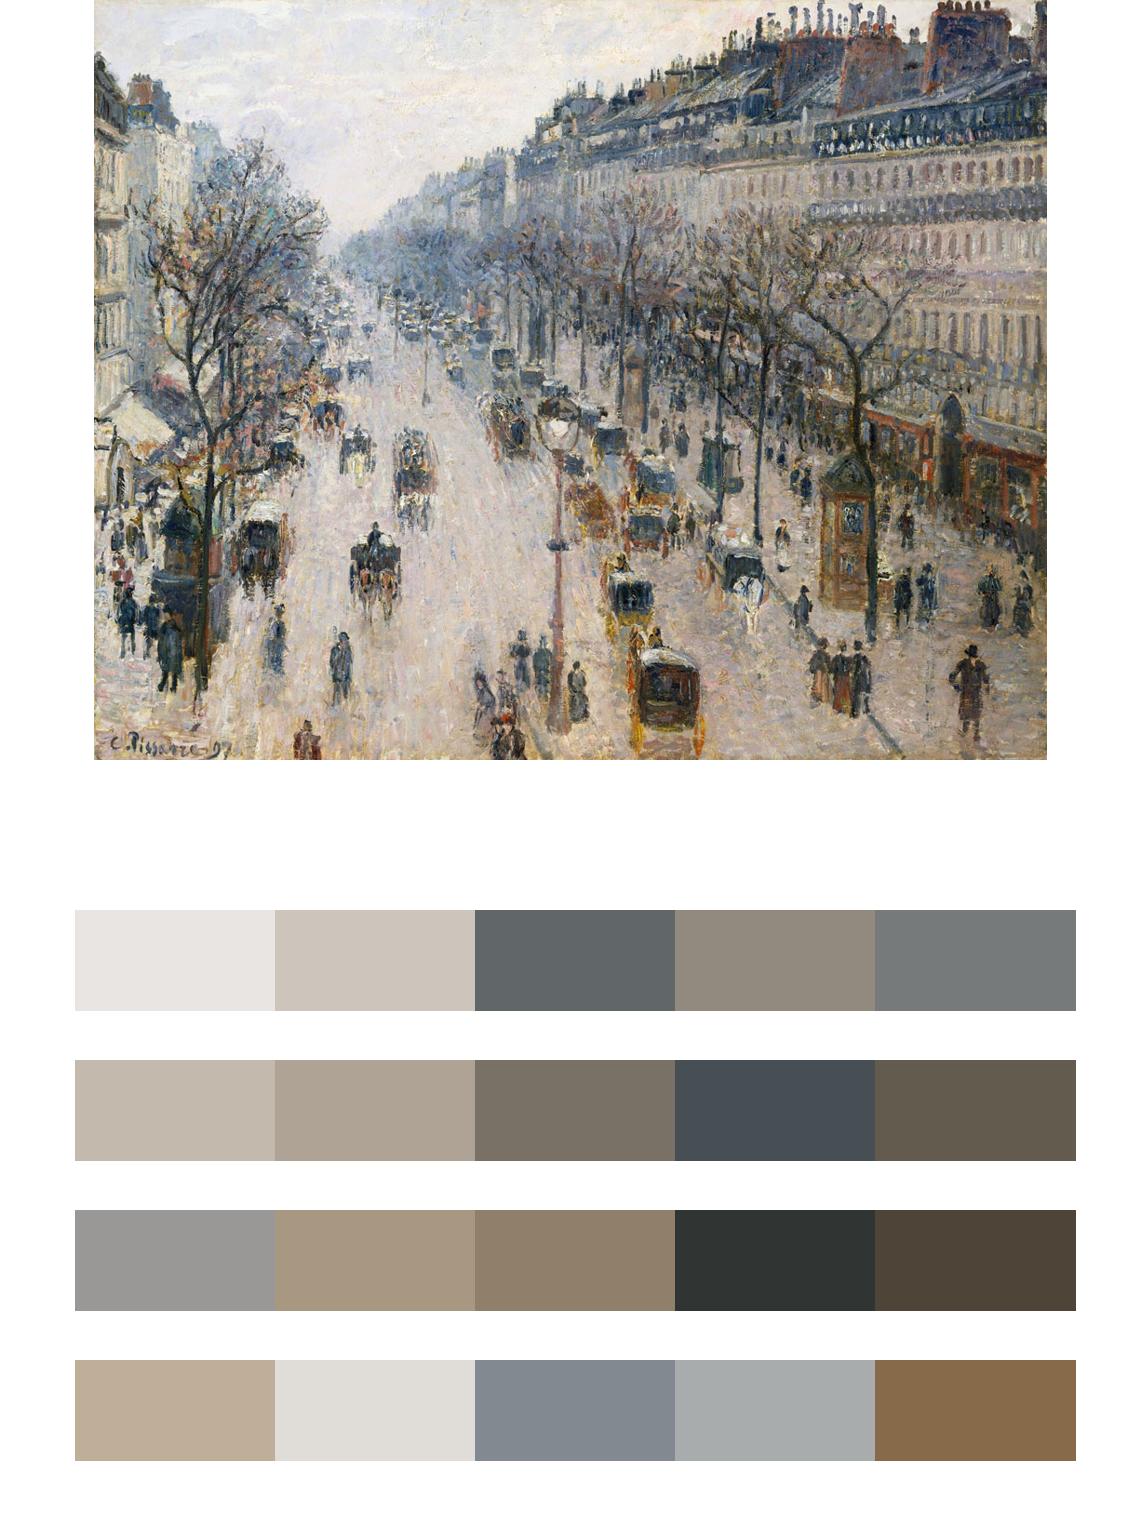 Улица Парижа 19 век цвета